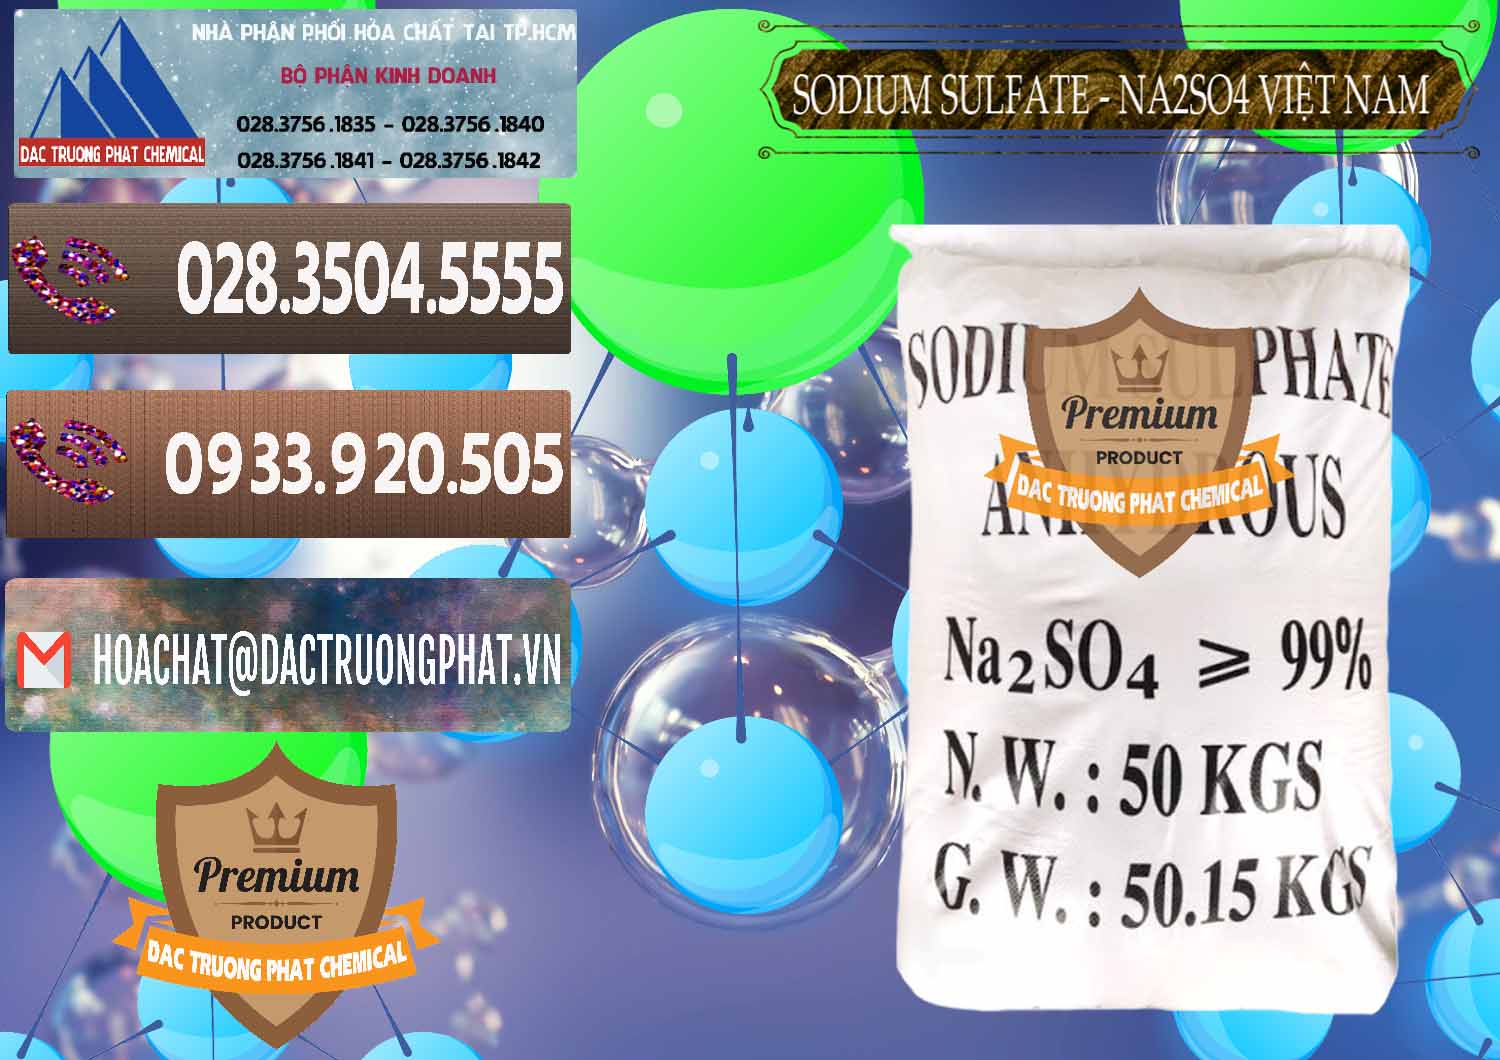 Chuyên phân phối - cung ứng Sodium Sulphate - Muối Sunfat Na2SO4 Việt Nam - 0355 - Đơn vị cung cấp và phân phối hóa chất tại TP.HCM - hoachatviet.net